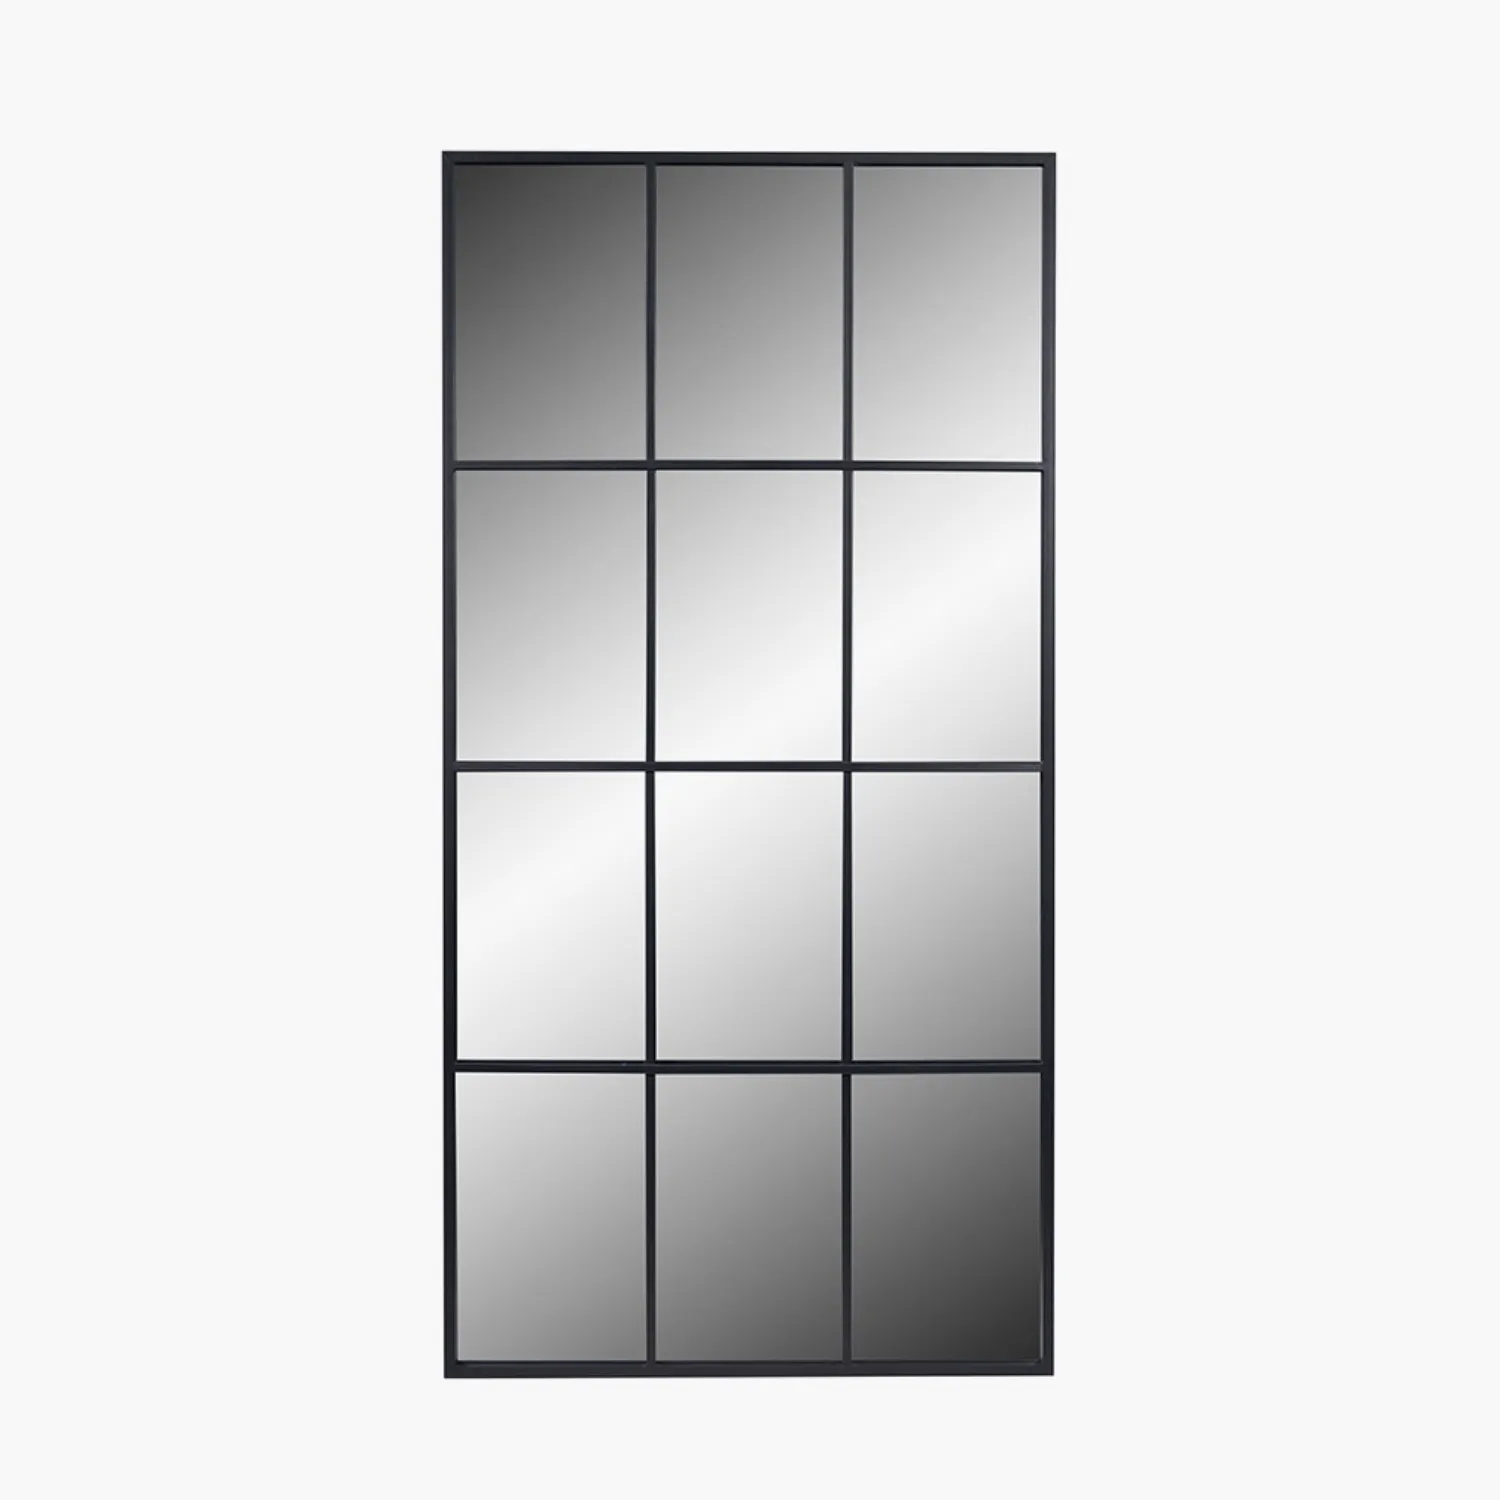 Large Dark Grey Metal Floor Standing Window Mirror